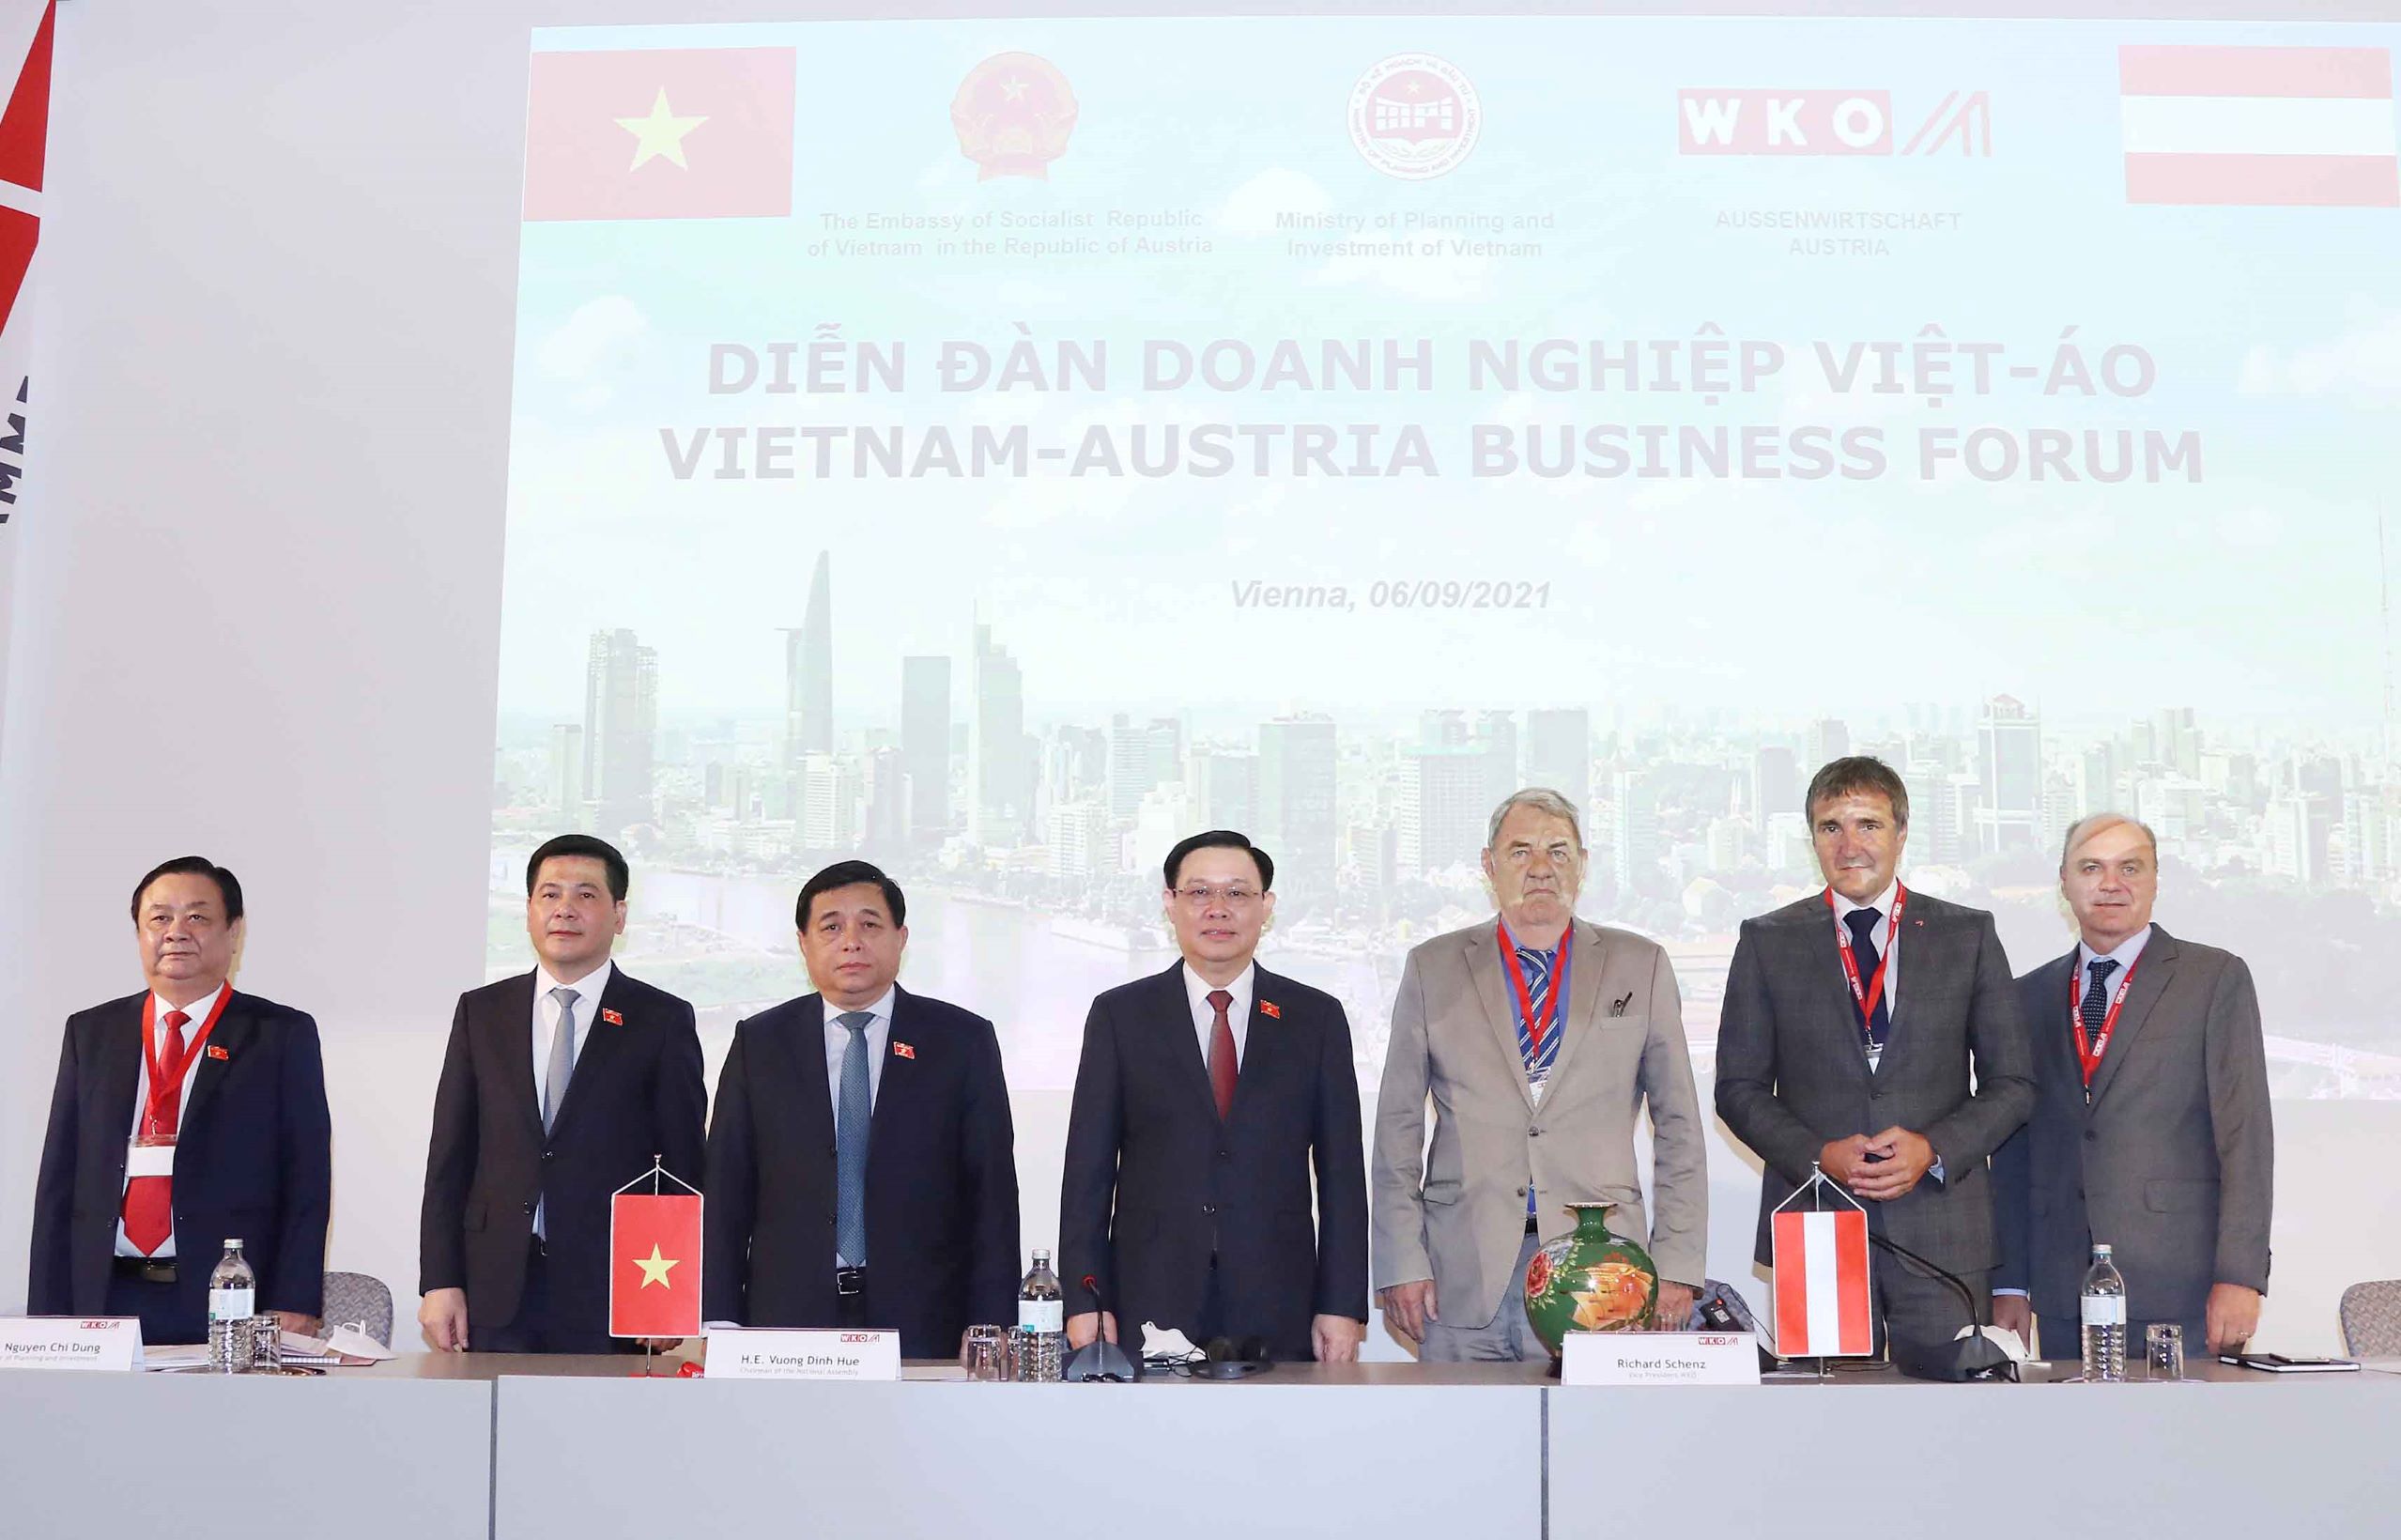 Chủ tịch Quốc hội Vương Đình Huệ: Hợp tác với Việt Nam là tiếp cận với thị trường có 1,3 tỷ dân